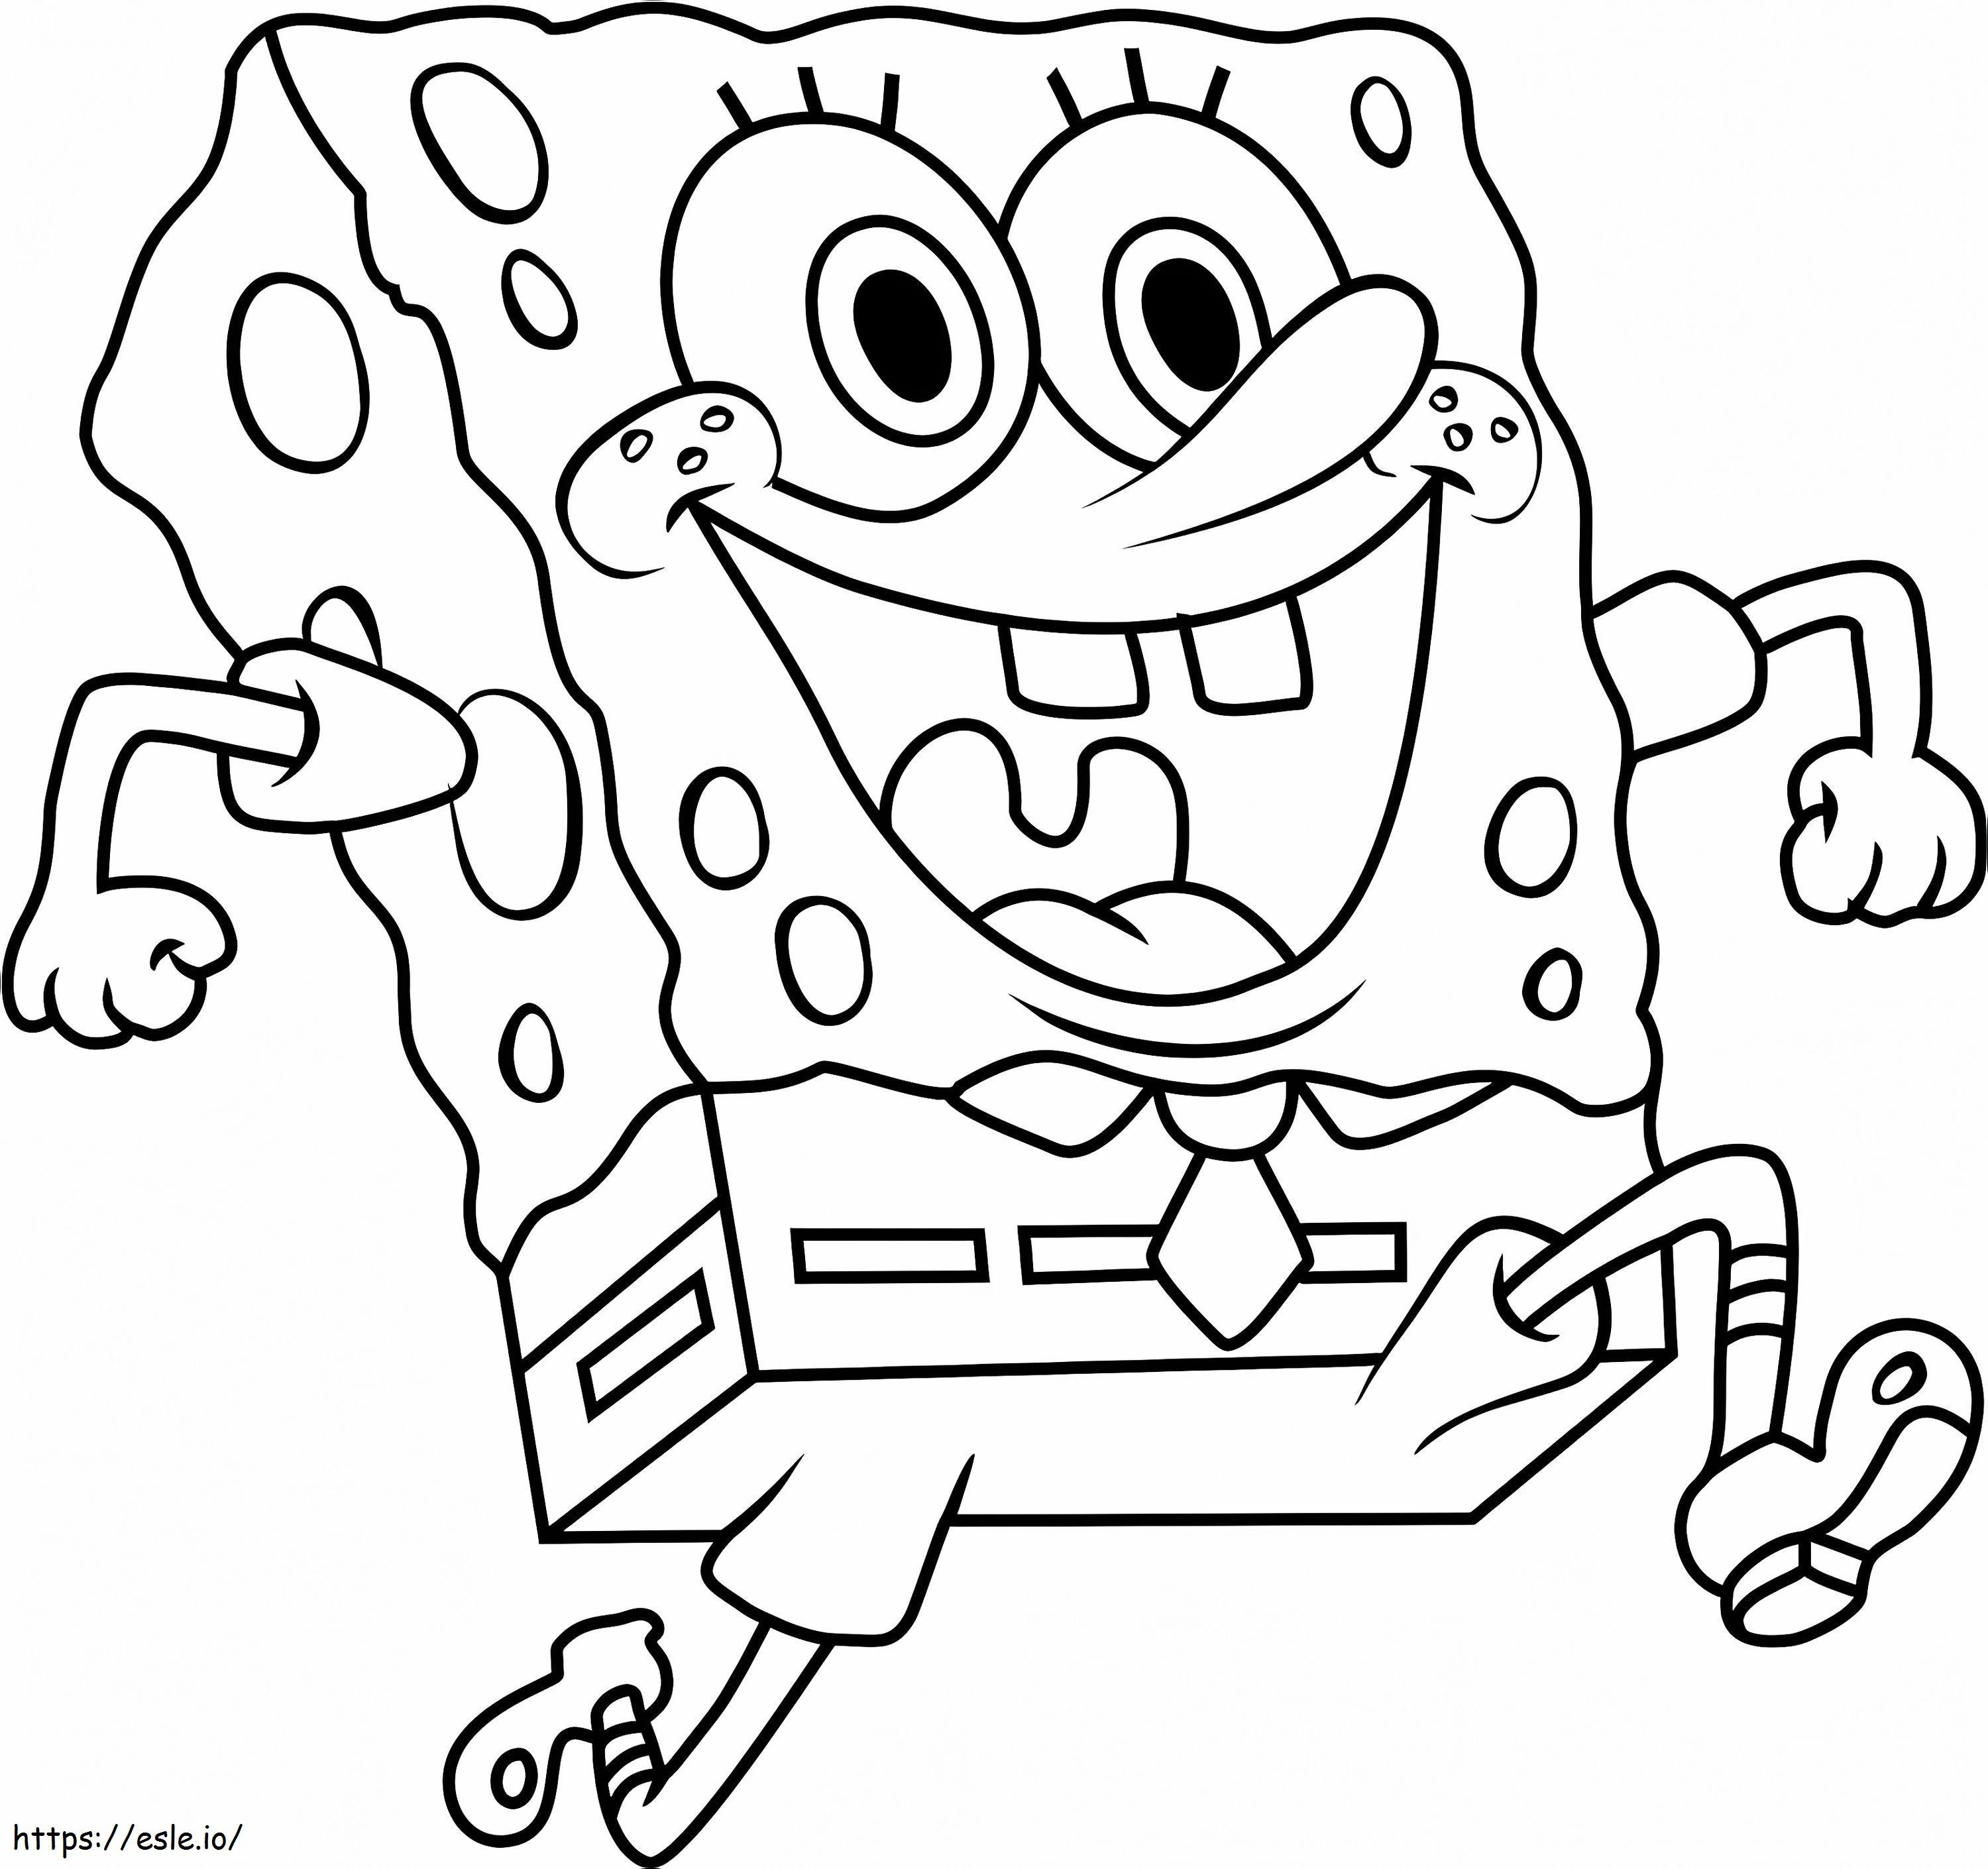 1530236867_Spongebob1 coloring page